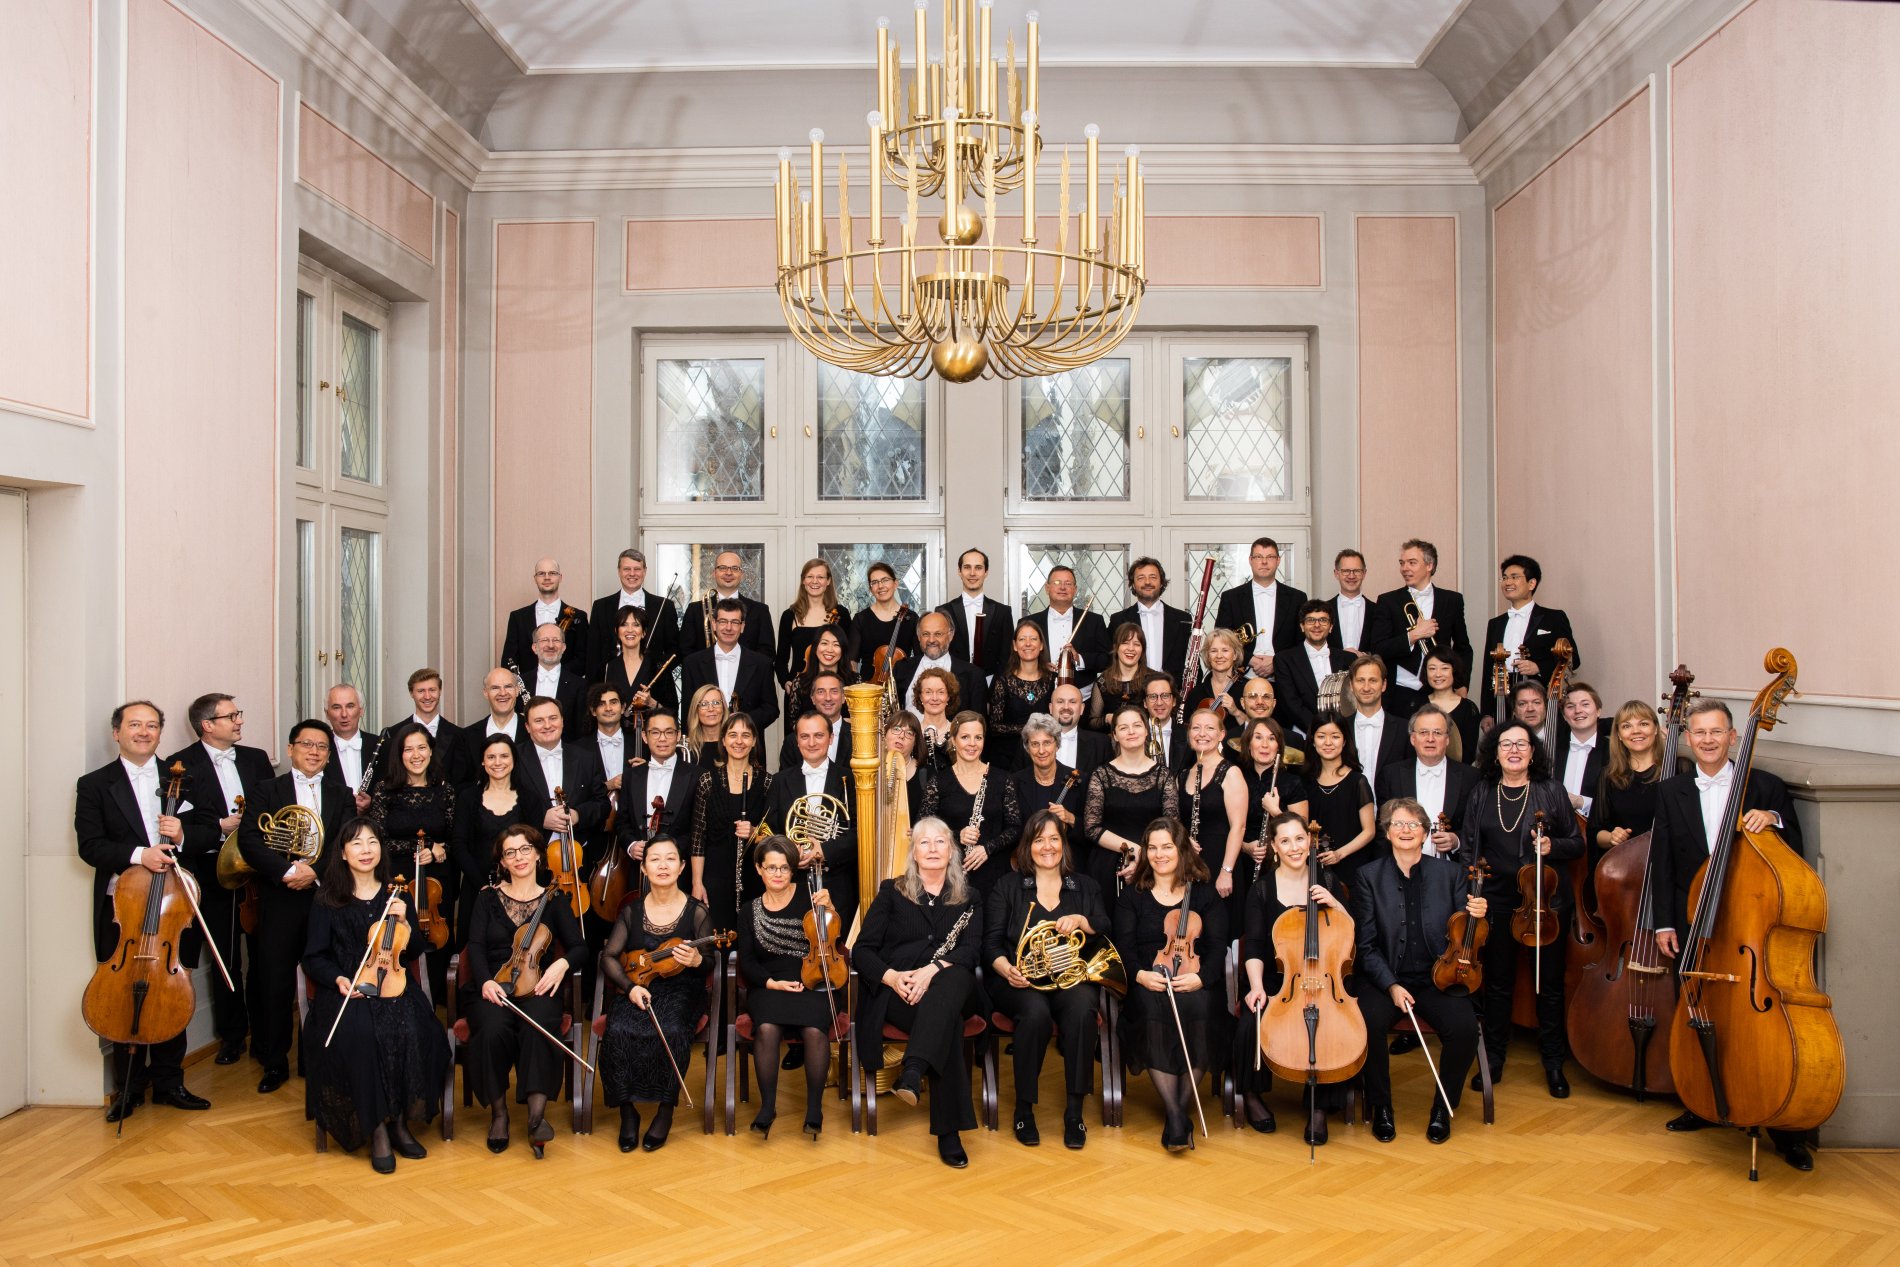 Staatsorchester Rheinische Philharmonie / Urheber: Staatsorchester Rheinische Philharmonie